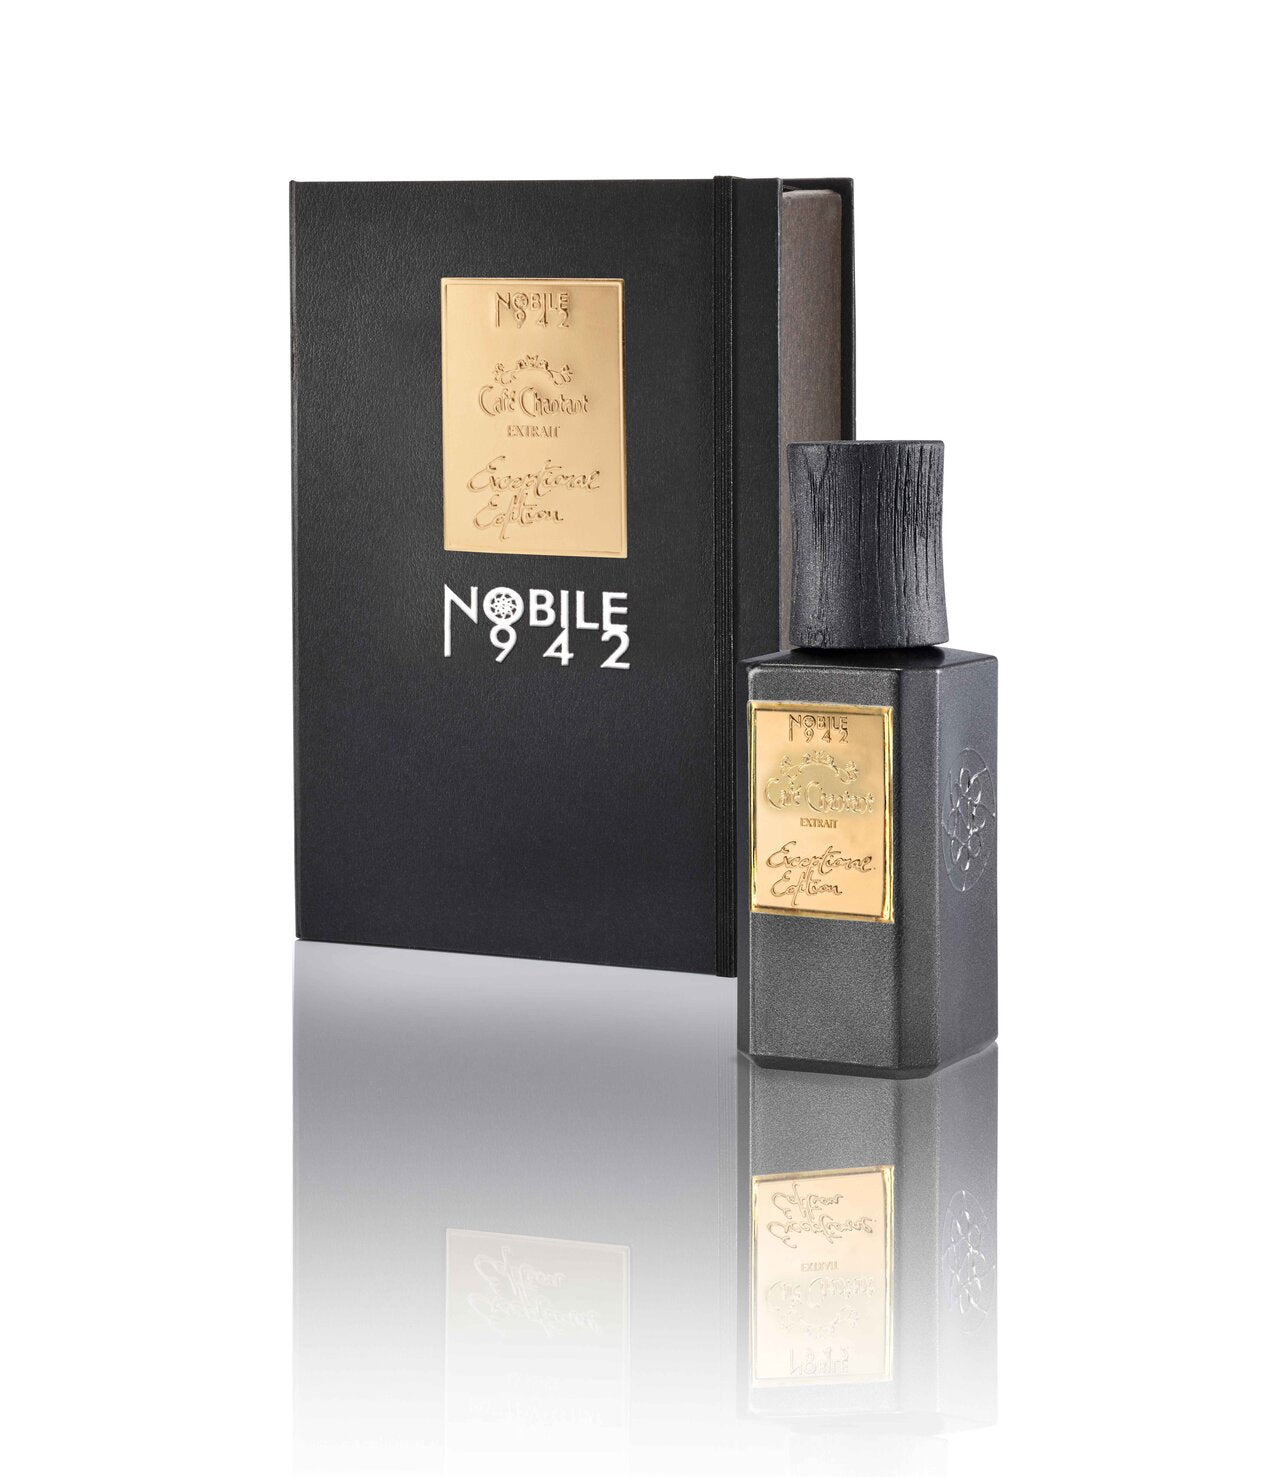 Nobile 1942 Cafè Chantant Exceptional Edition Unisex Extrait De Parfum 75ml